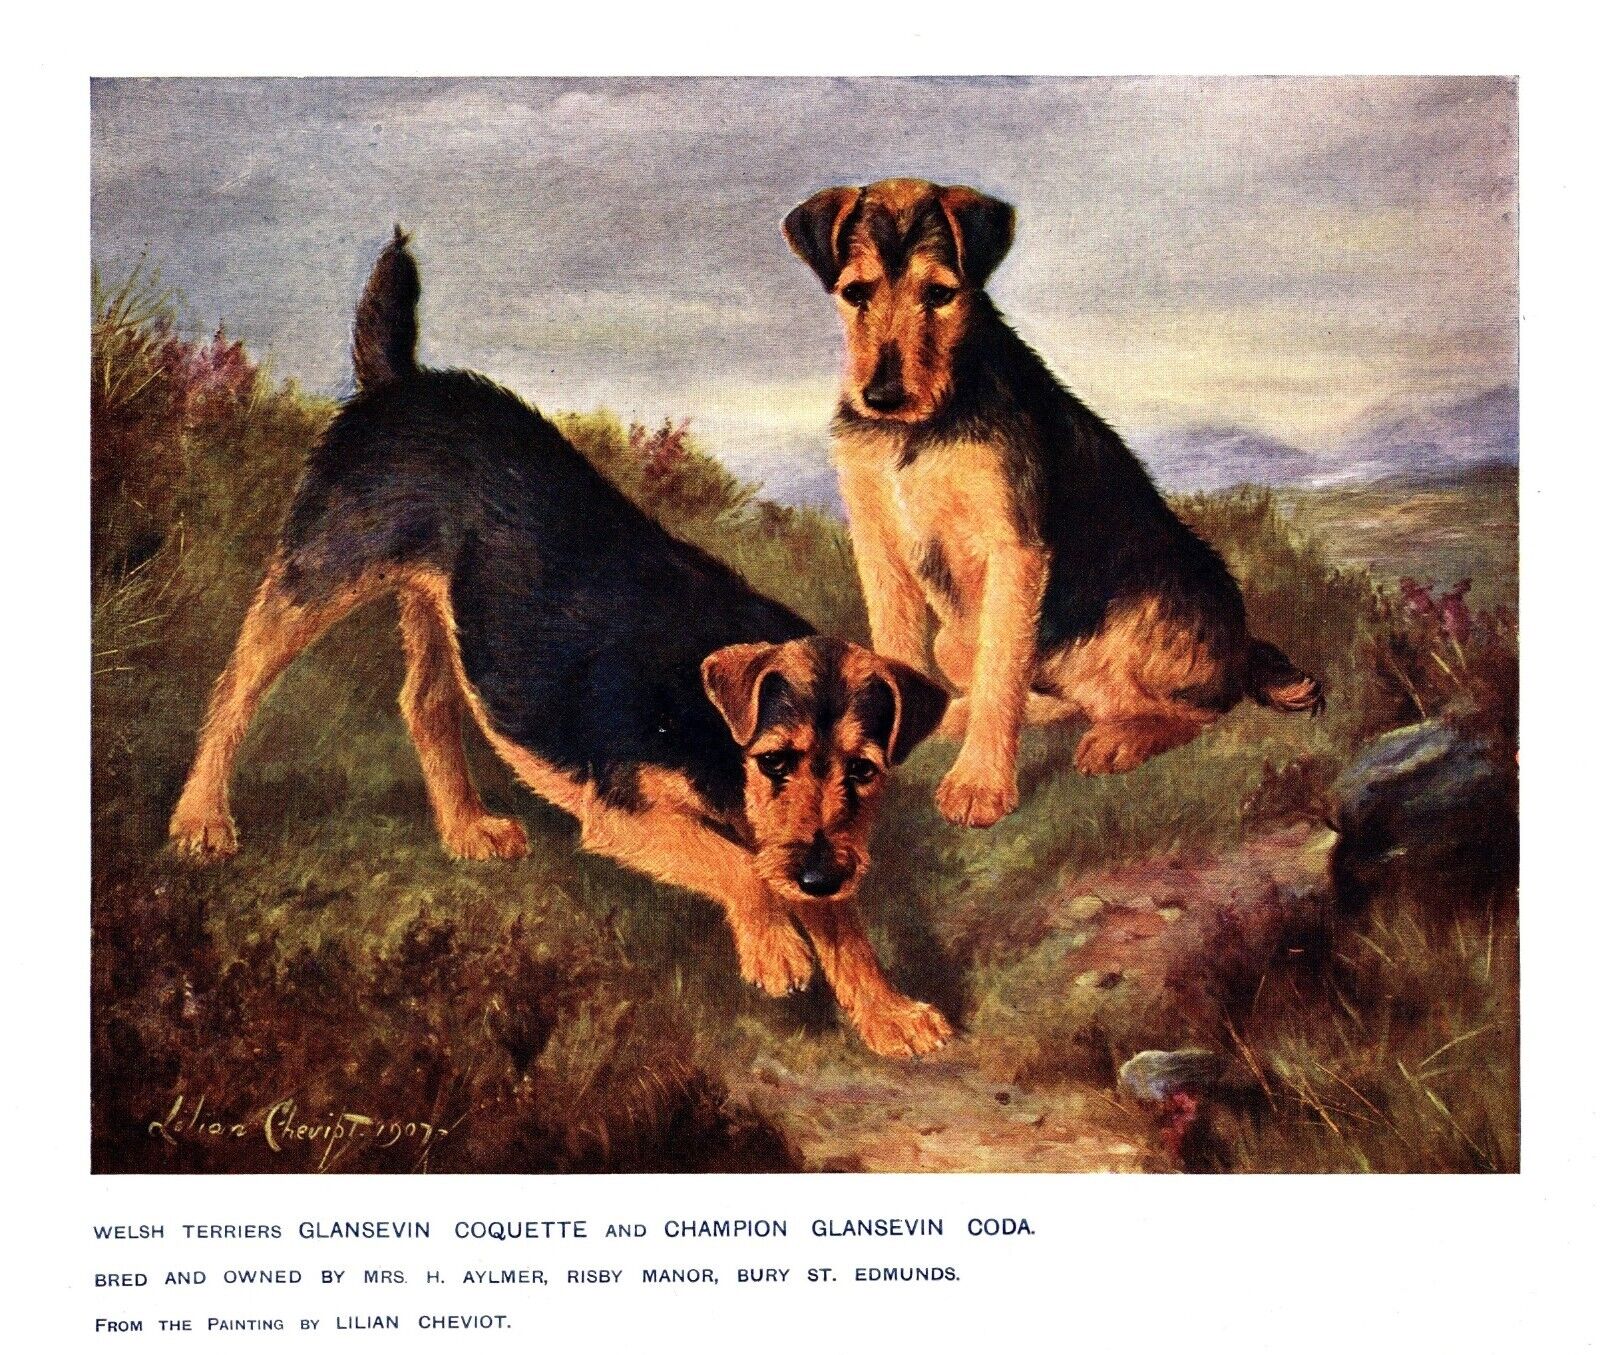 Antique Welsh Terrier Print 1911 L Cheviot Art Glansevin Welsh Terrier 5174p